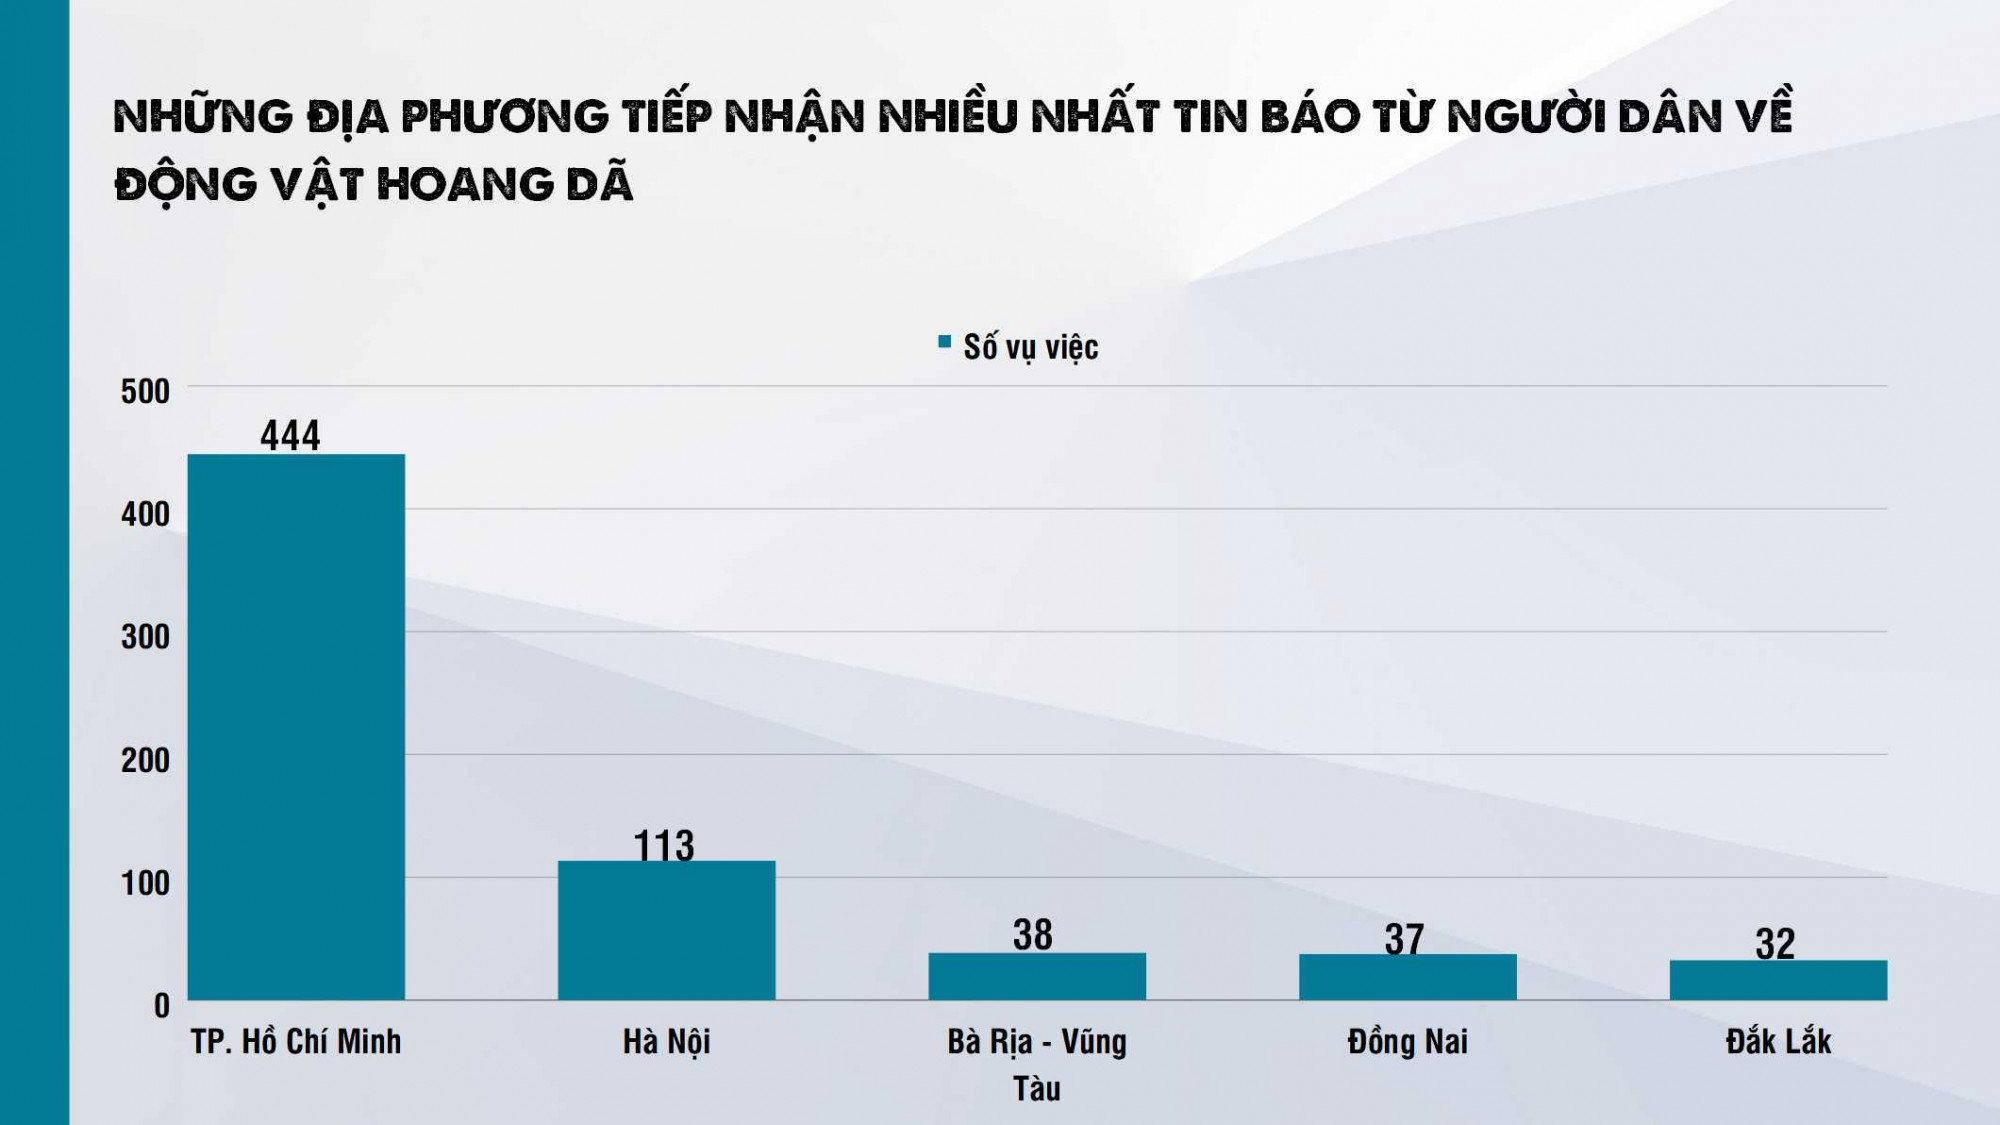 Theo báo cáo ghi nhận TPHCM và Hà Nội là hai thành phố ghi nhận số lượng vụ việc về động vật hoang dã do người dân thông báo nhiều nhất trên cả nước